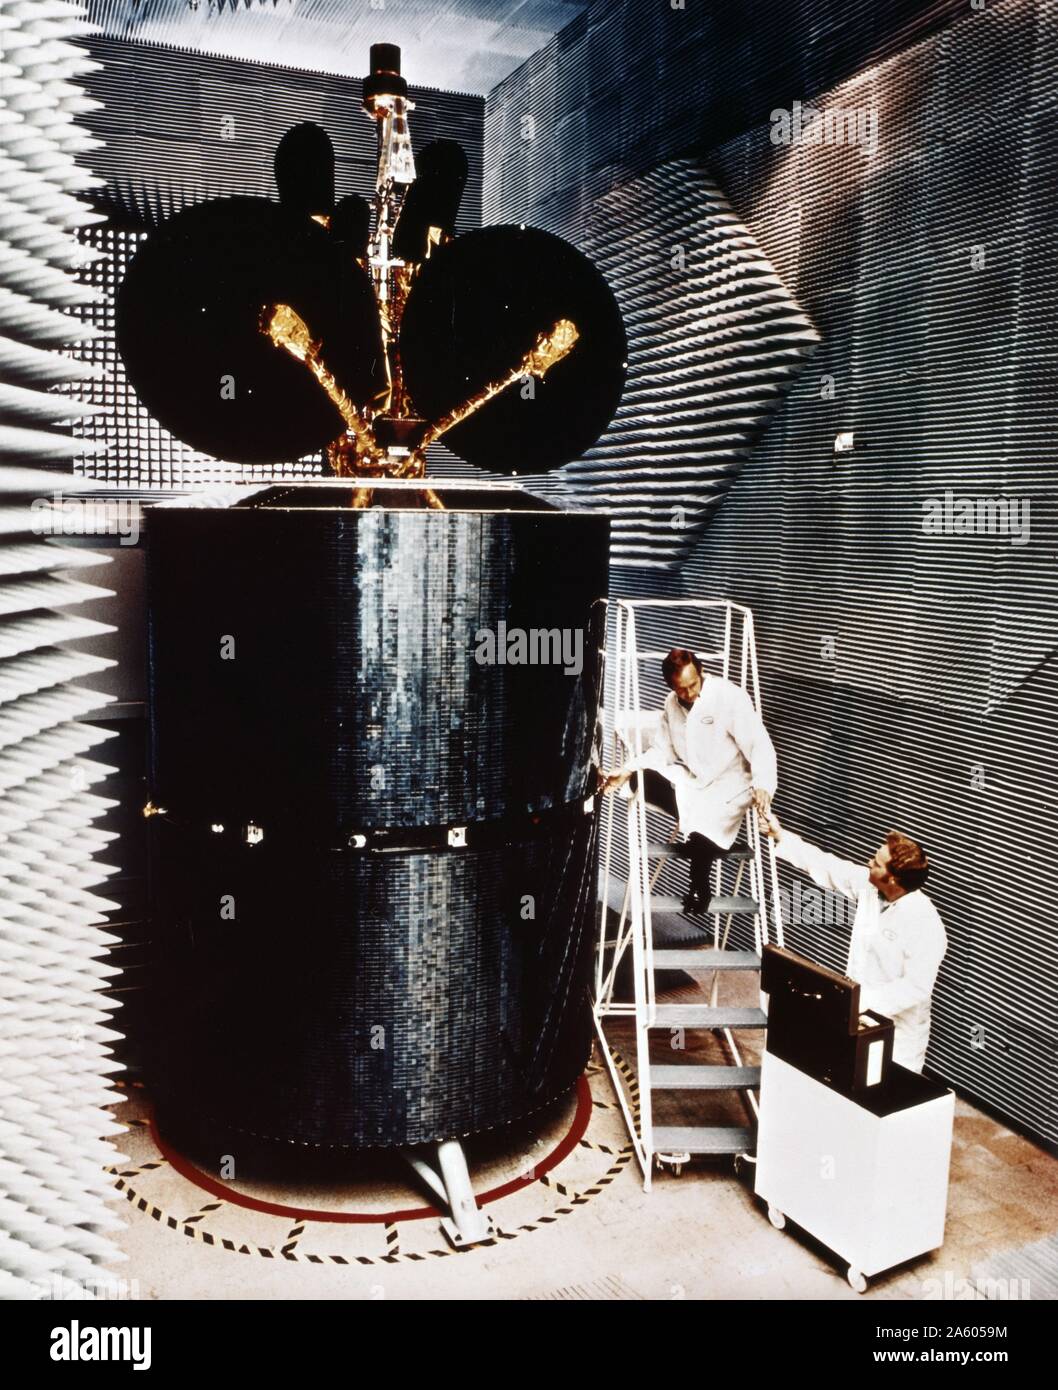 In una camera anecoica, ingegneri testando un Intelsat IV satellite di comunicazione, progettato dall'American aerospace company Hughes Aircraft Company. 1975 Foto Stock